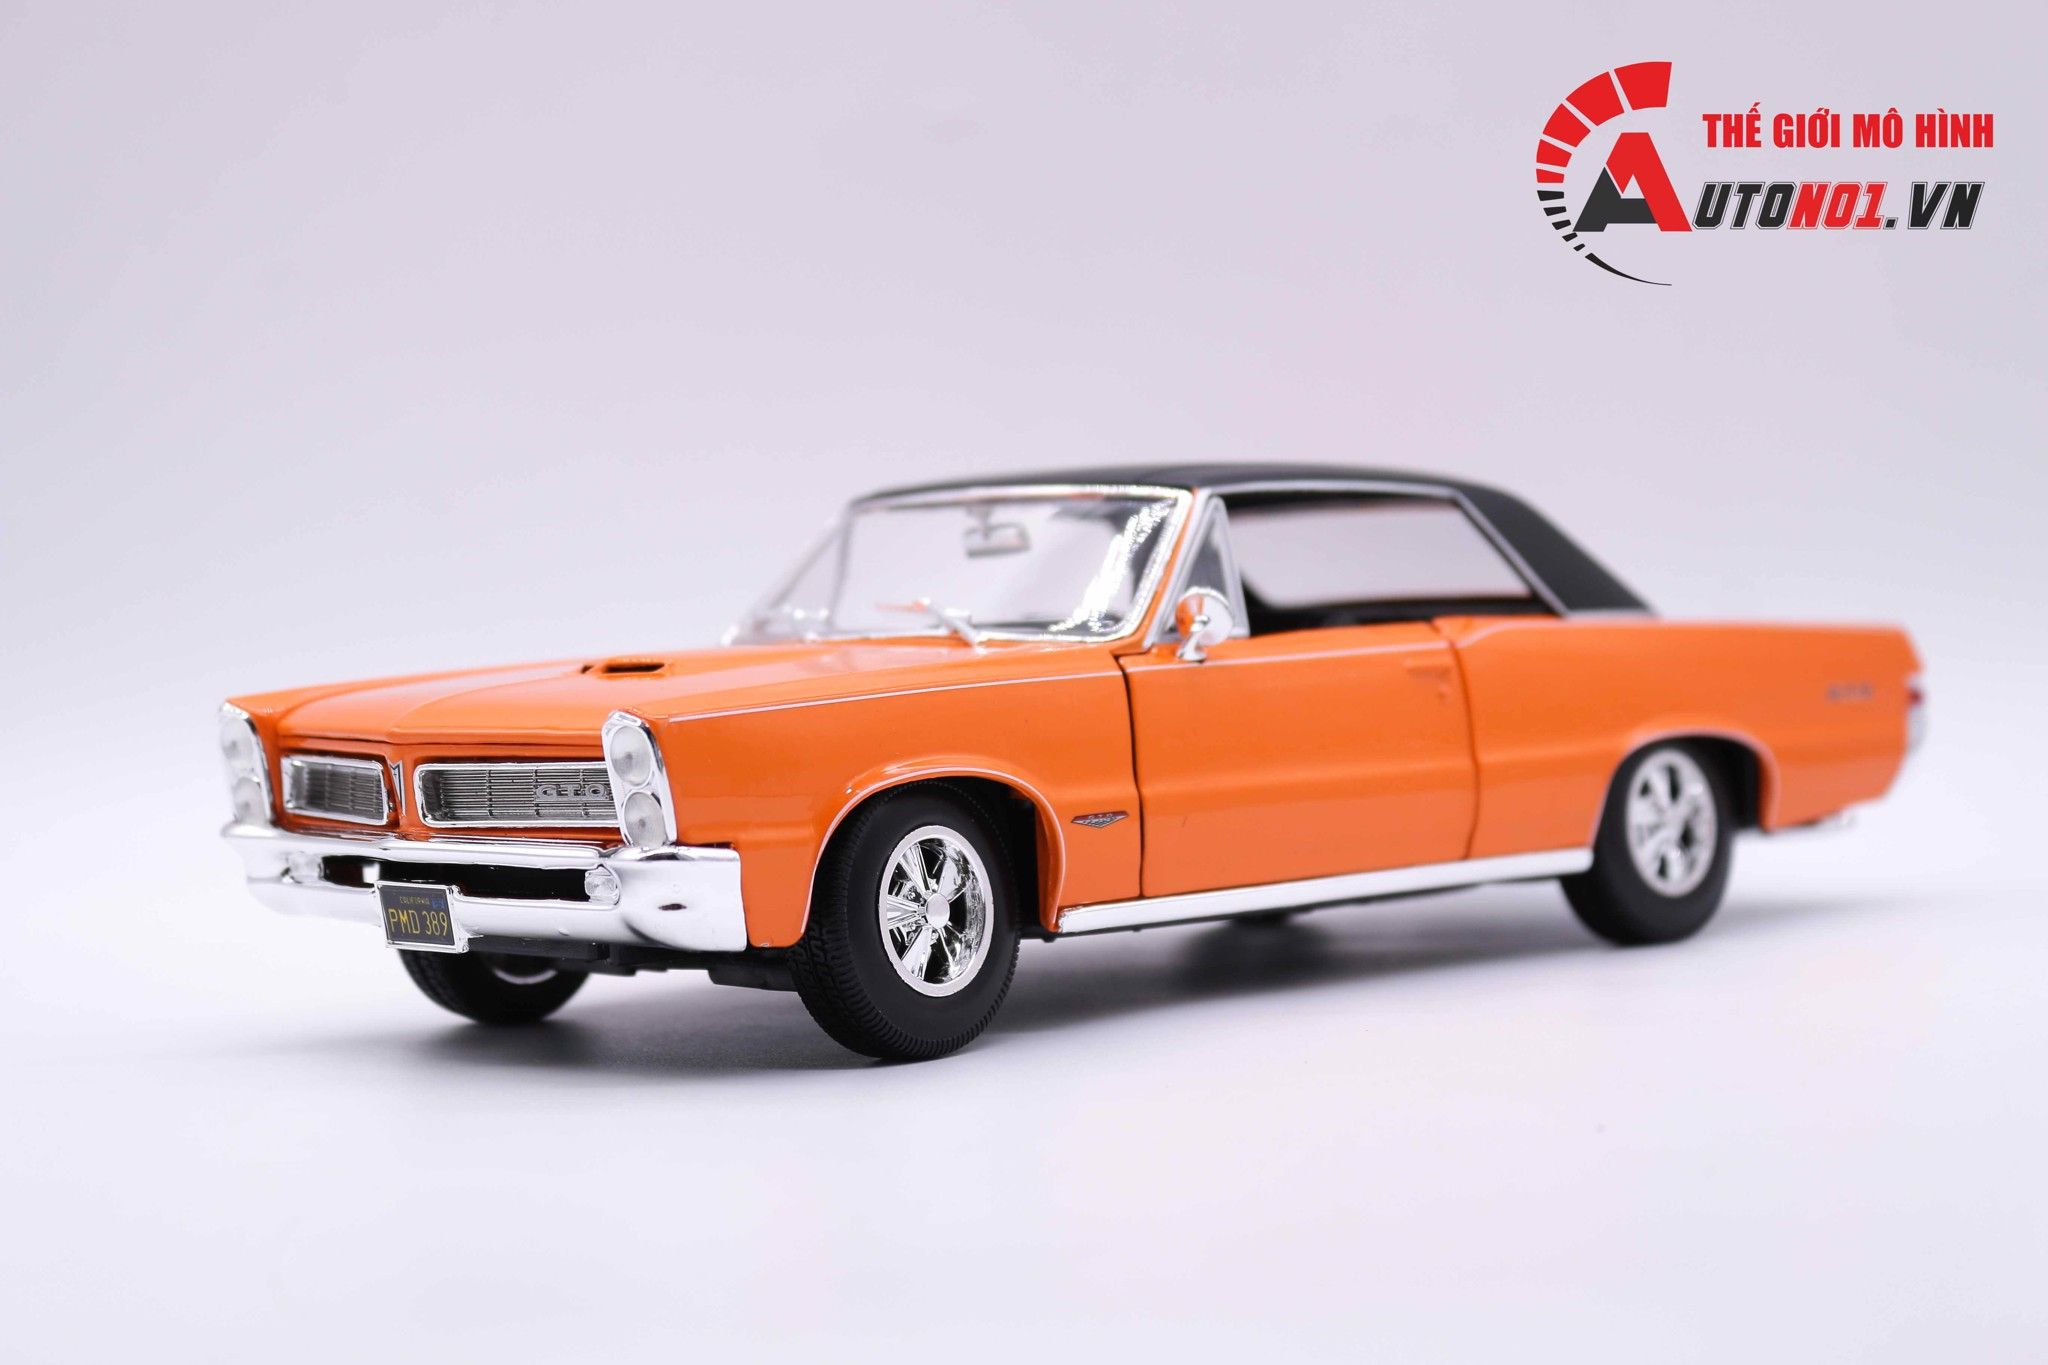  Mô hình xe Pontiac Gto Hurst Edition Orange 1:18 Maisto 2918 